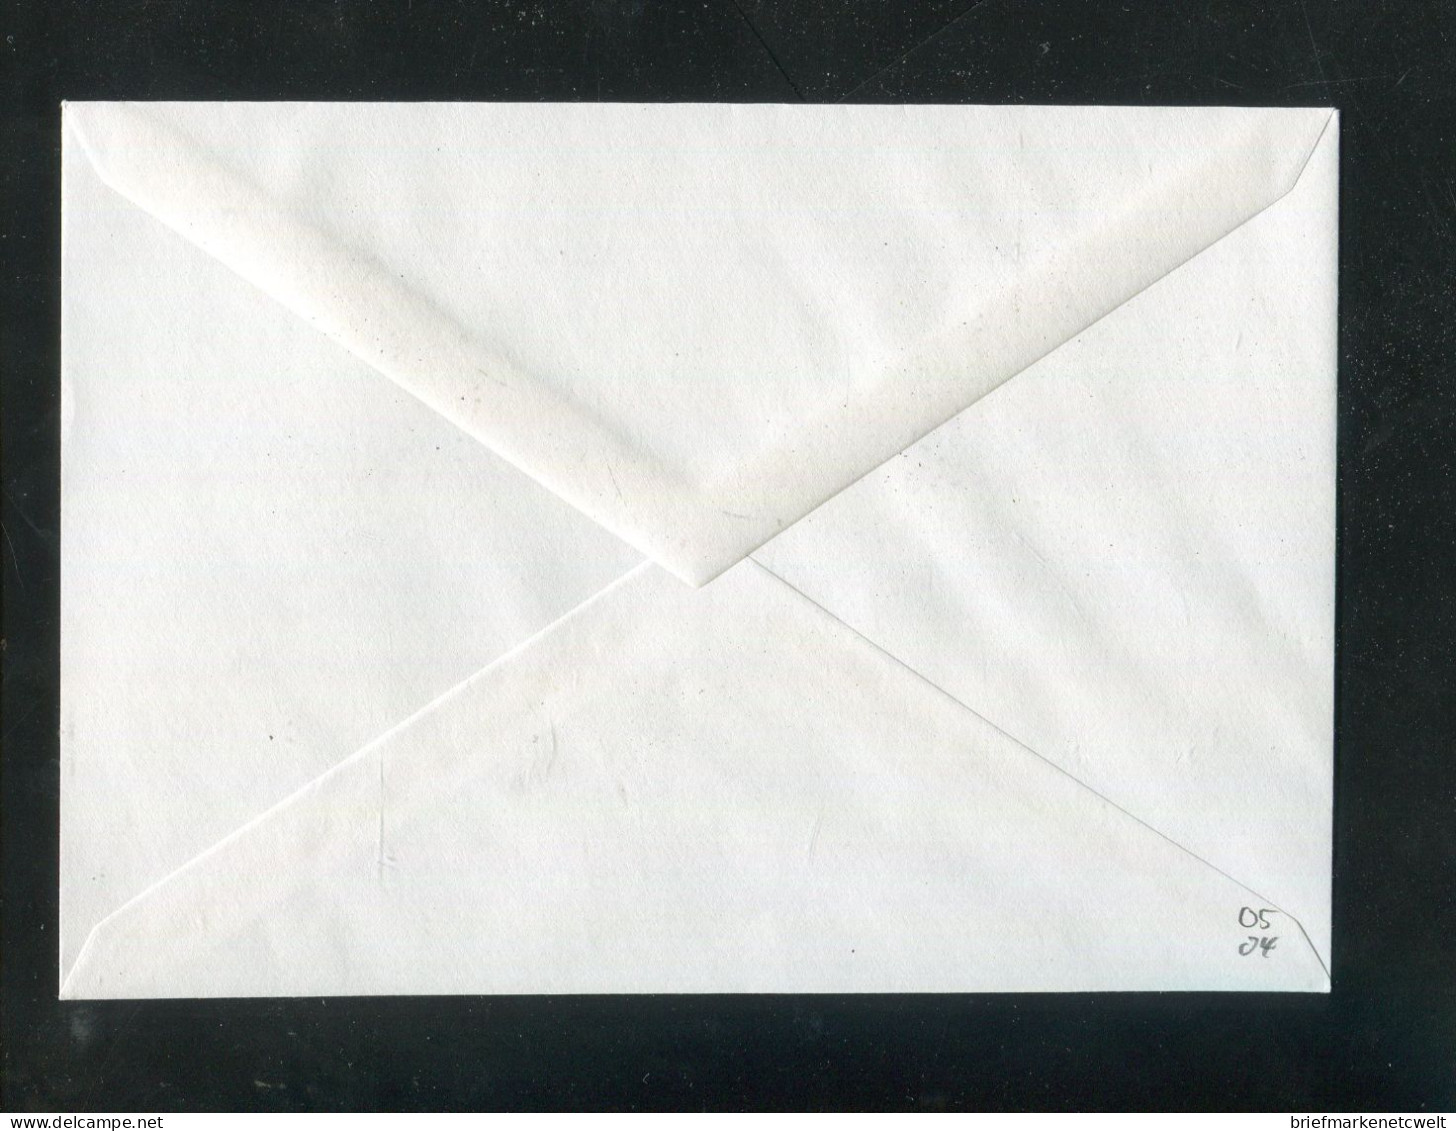 "BUNDESREPUBLIK DEUTSCHLAND" 1994, Privat-Ganzsachenumschlag "Olympiade" SSt. "BONN" (B0056) - Privé Briefomslagen - Gebruikt